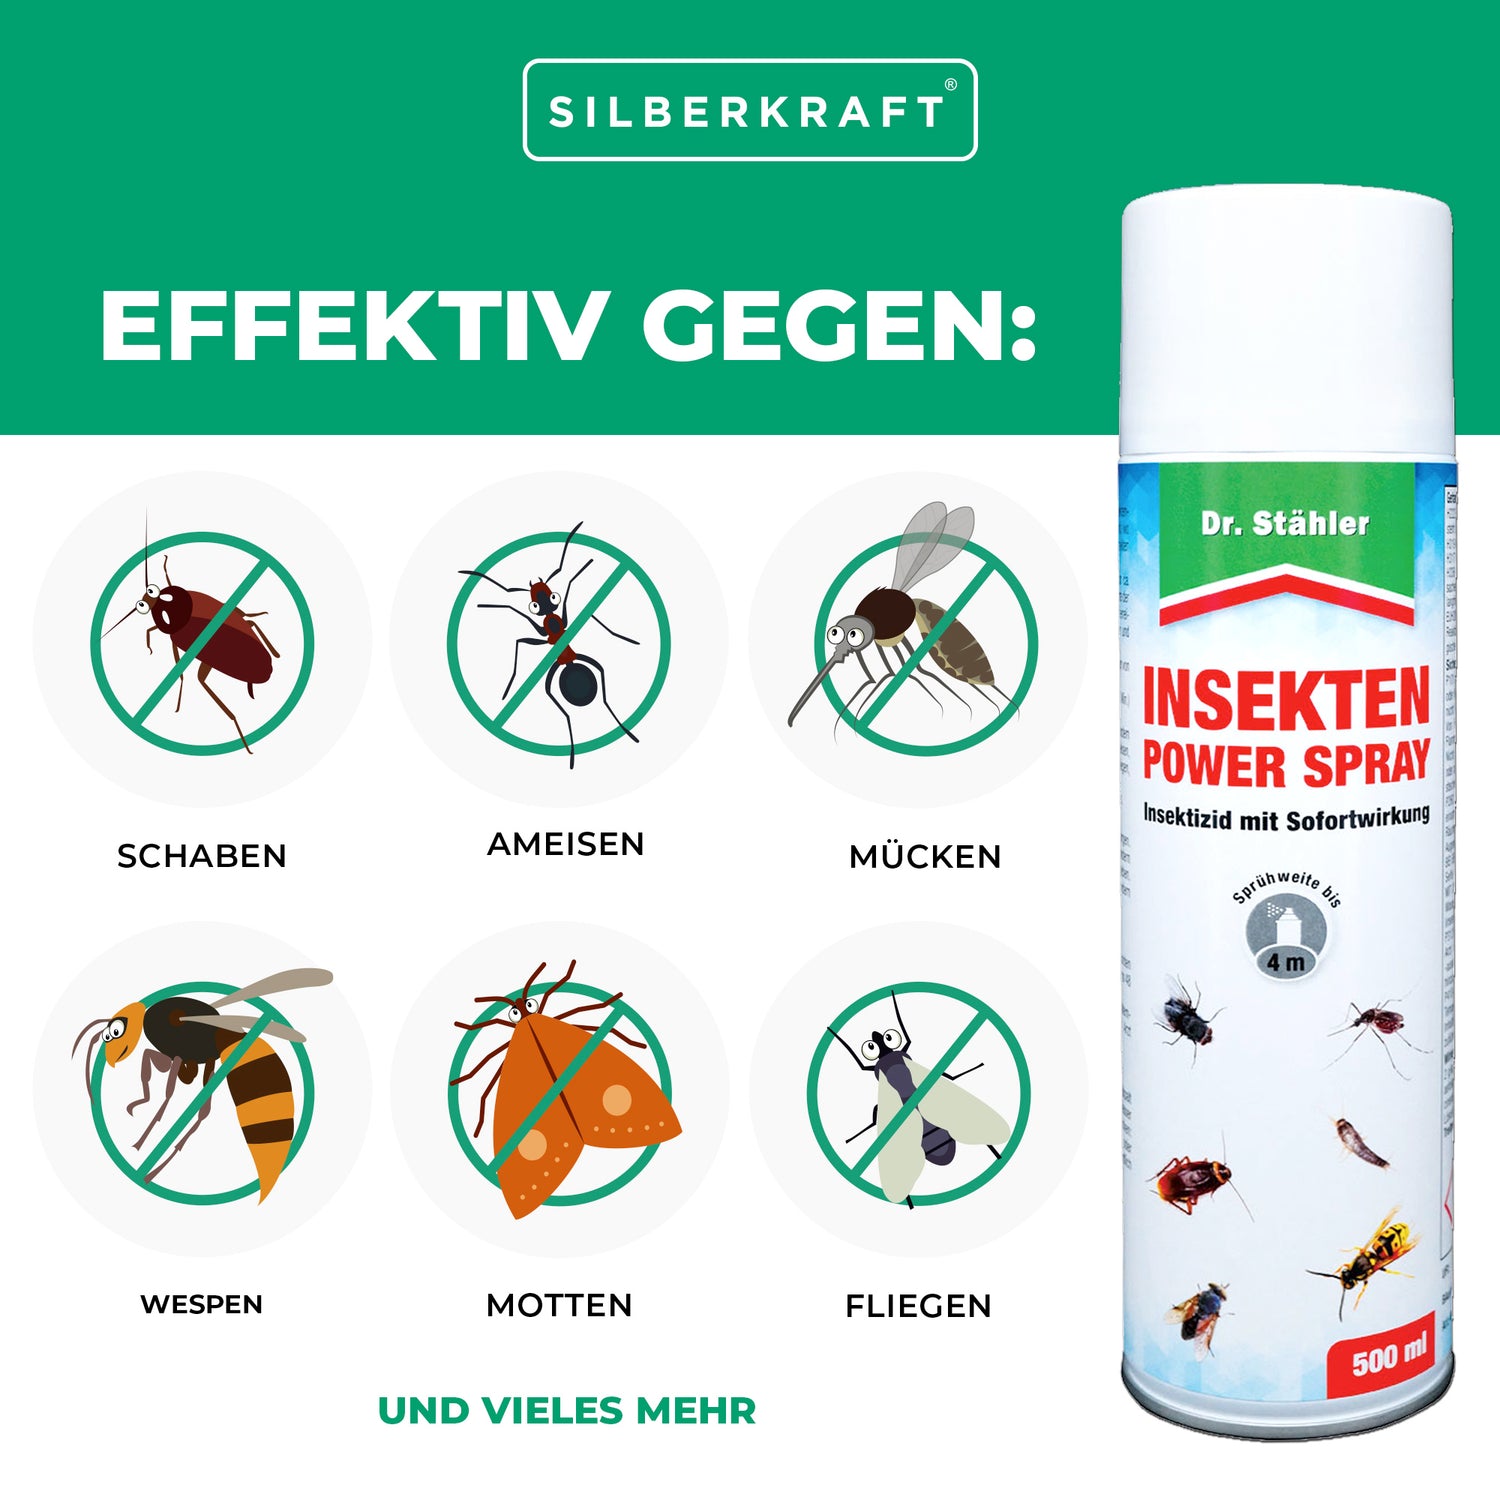 Insekten-Power Spray: Effektive Lösung für kriechende und fliegende Ungeziefer wie Schaben und Motten